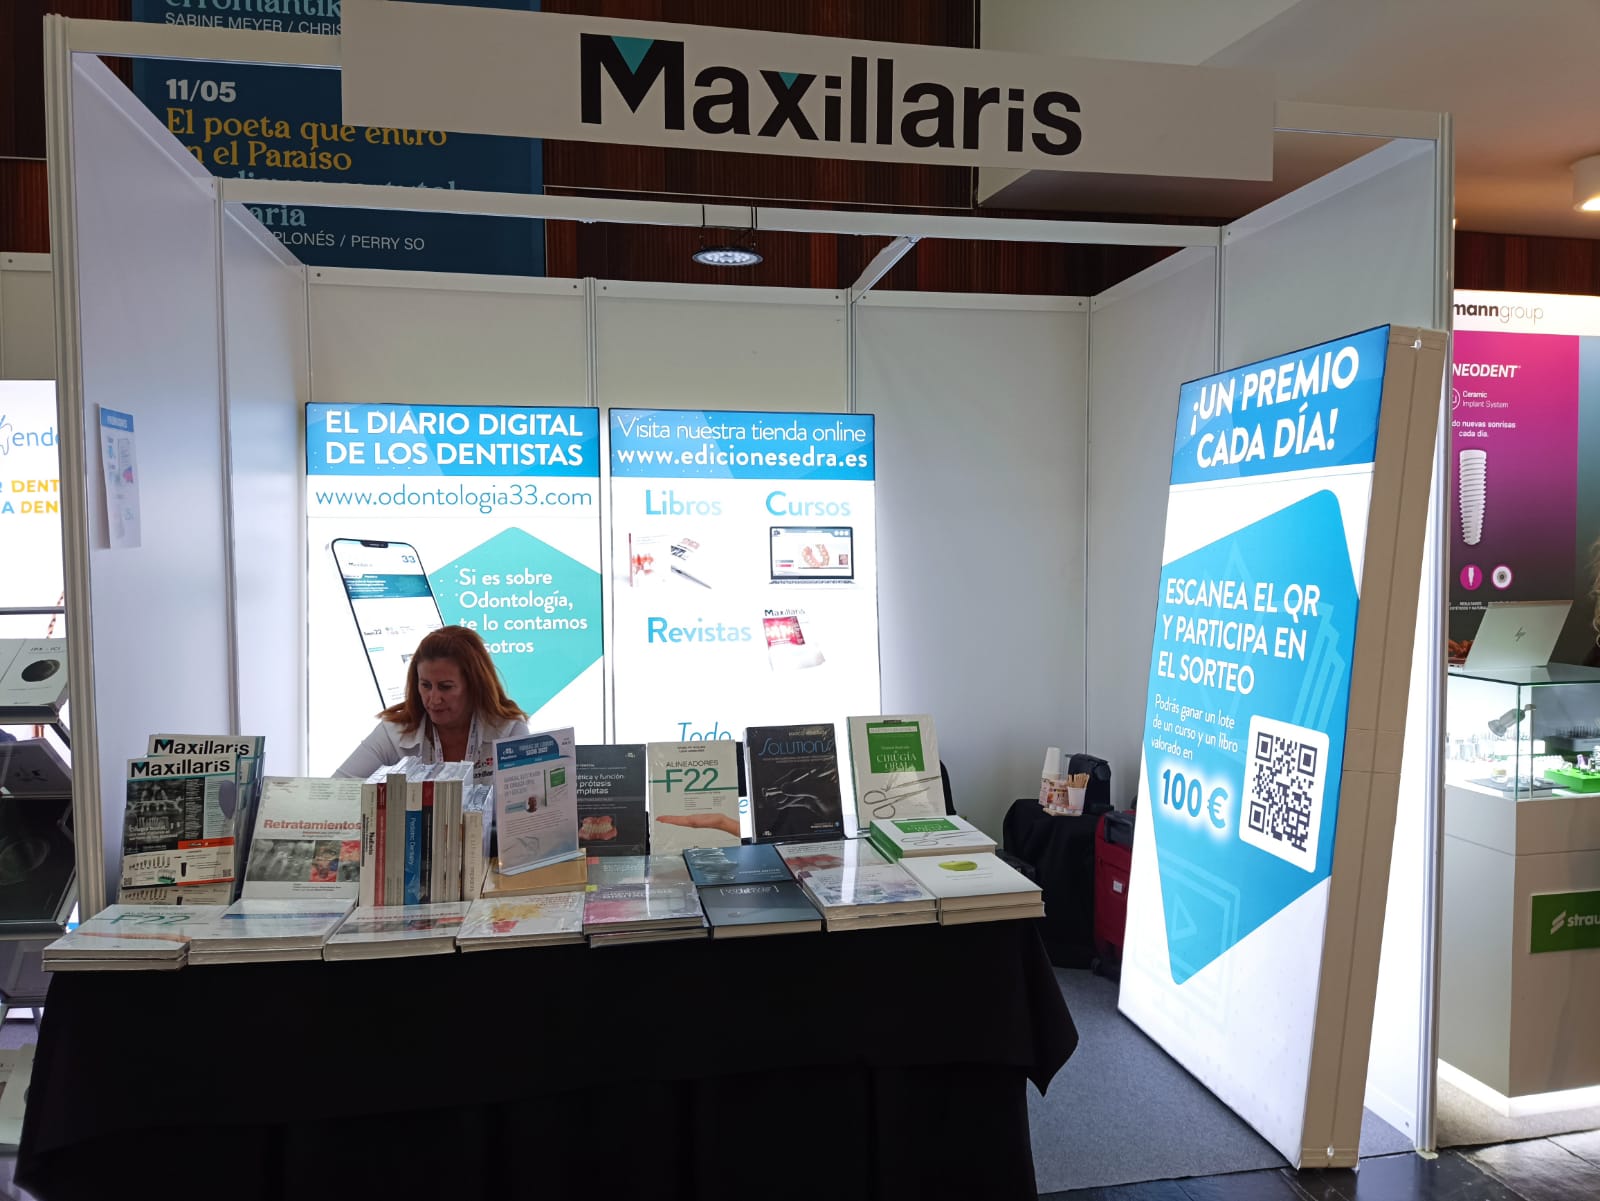 Maxillaris participó activamente en el Congreso SECIB 2022 a través de su stand 21 en el que tuvo lugar la firma del Dr. Matteo Chiapasco y sorteos de libros especializados cada día.